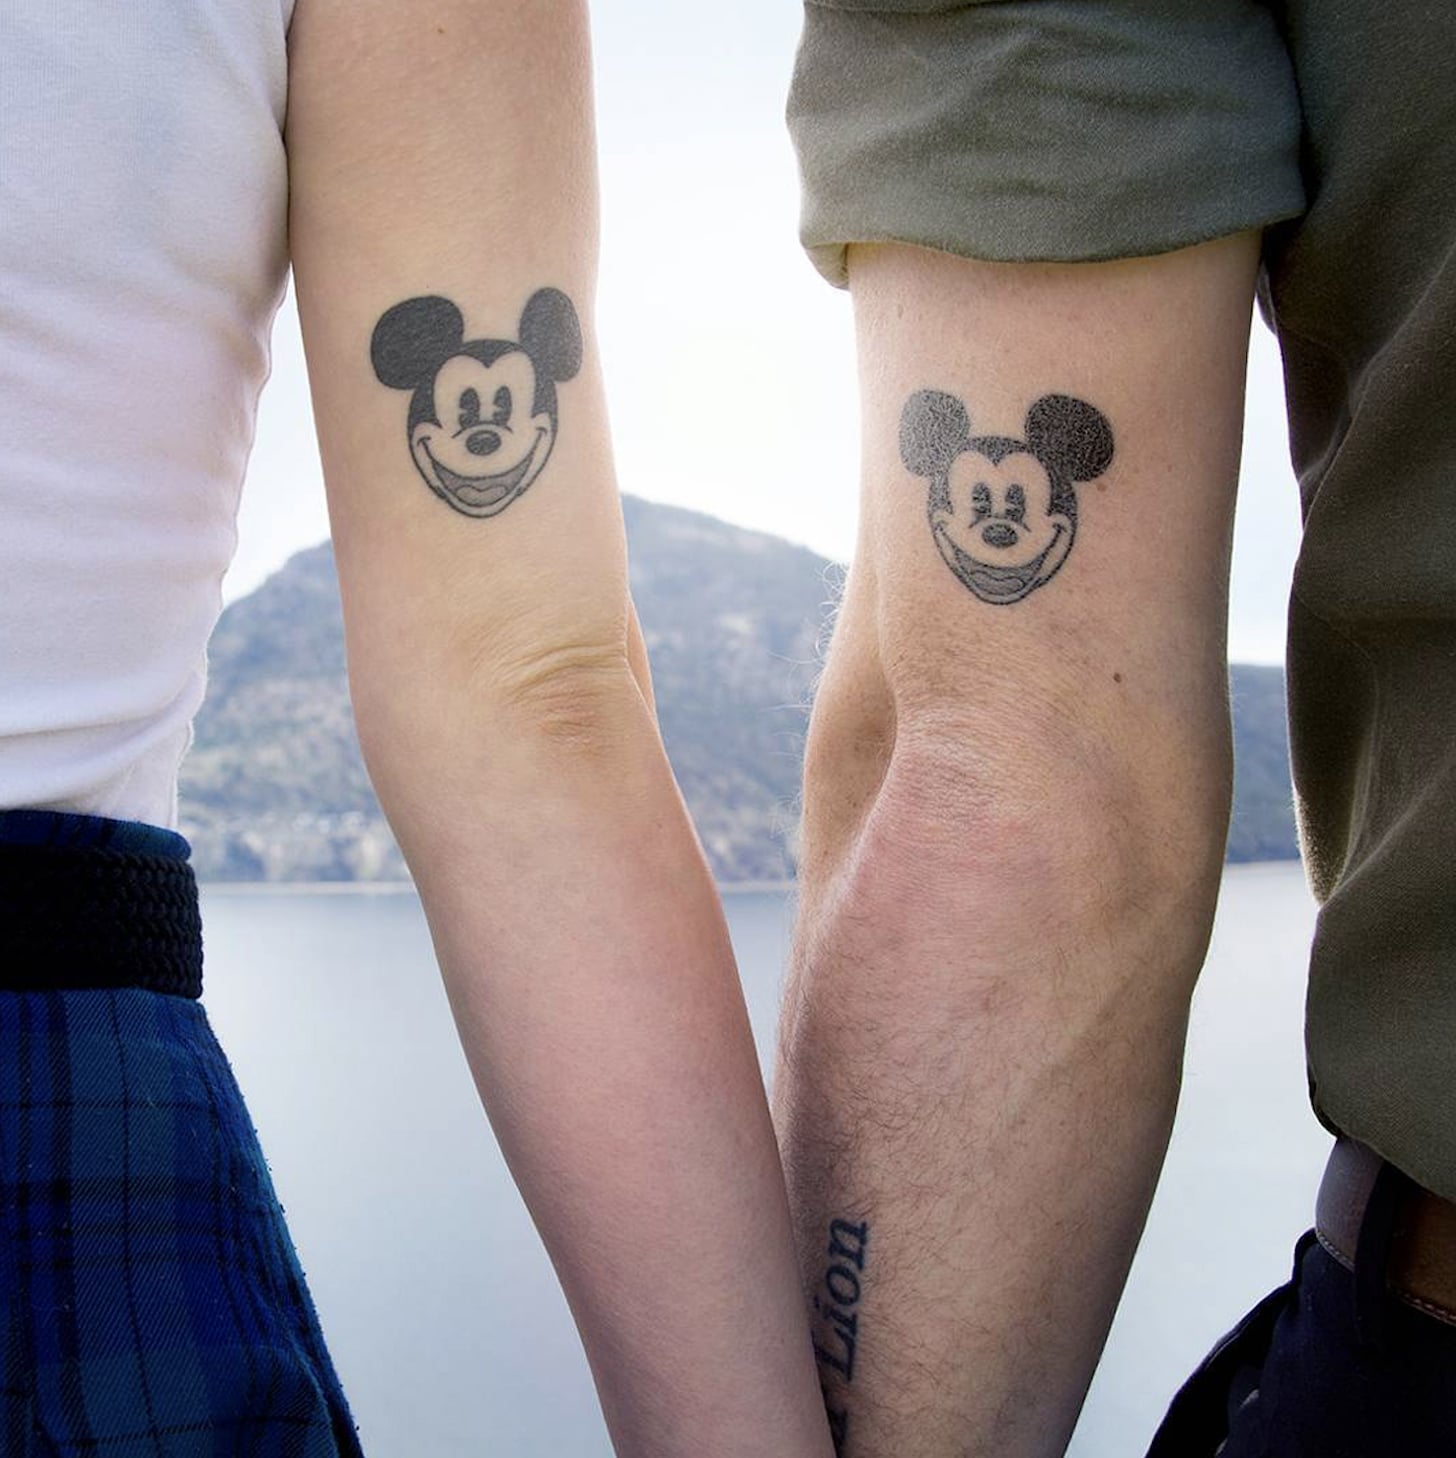 𝐈𝐦𝐚𝐠𝐢𝐧𝐞𝐬  𝐏𝐫𝐞𝐟𝐞𝐫𝐞𝐧𝐜𝐞𝐬  𝐖𝐡𝐲 𝐃𝐨𝐧𝐭 𝐖𝐞  Our  Cute Couple Tattoos  Wattpad